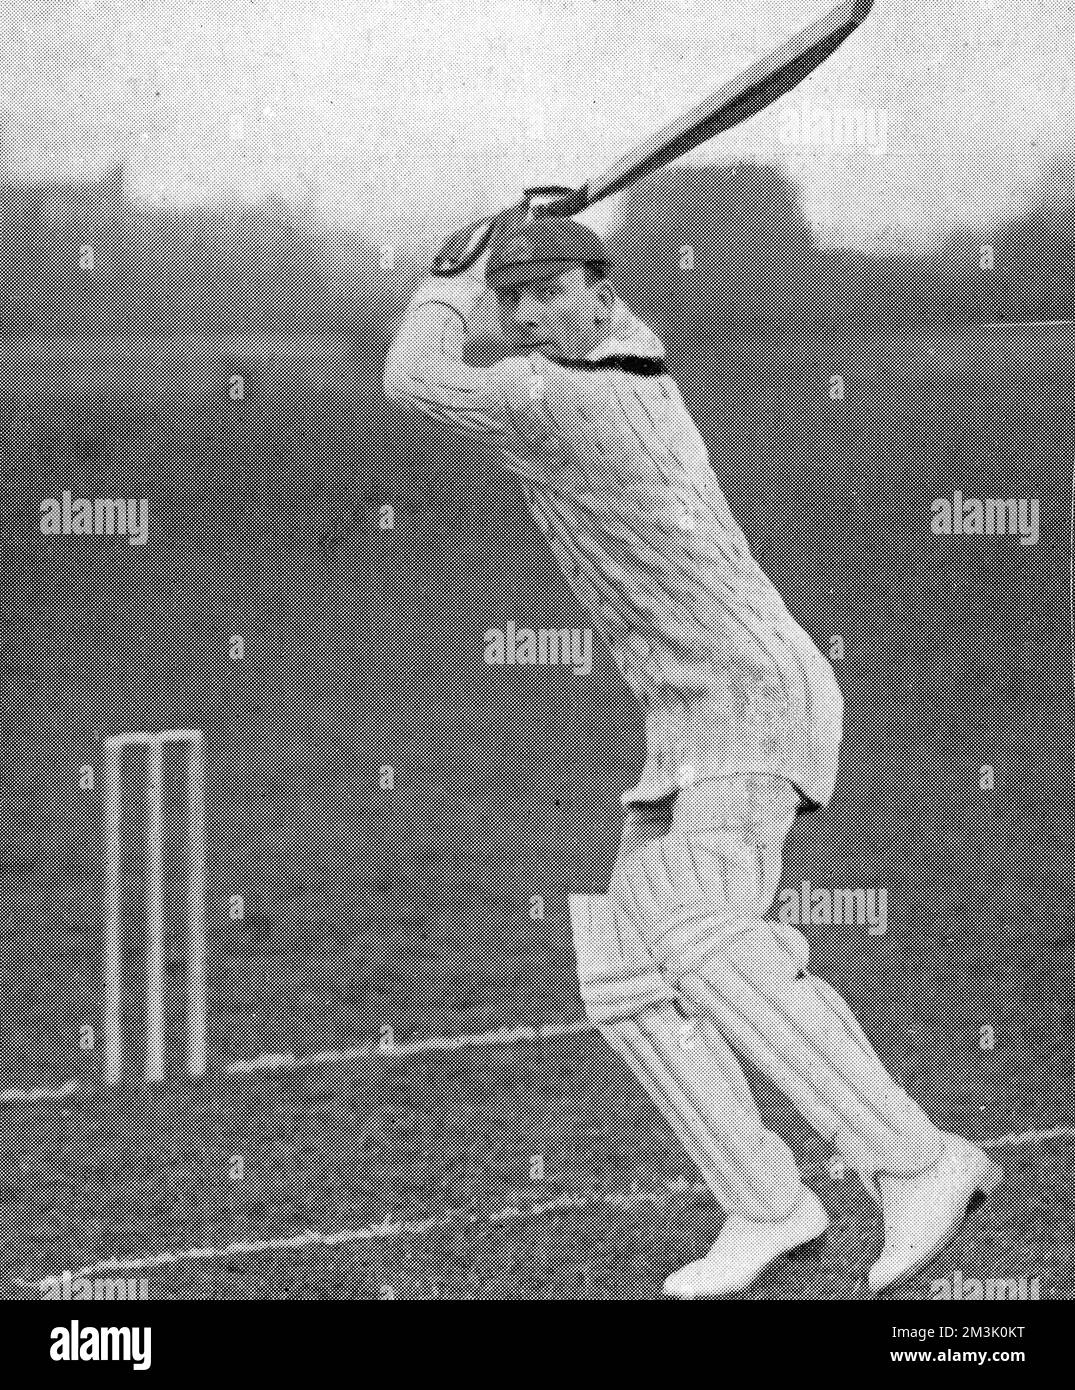 Foto von Jack Berry Hobbs (1882-1963), dem Schlagmann von Surrey und England, in Angriffsposition in der Saison 1924. Hobbs war der erste Cricketspieler, der W.G. übertroffen hat Graces Rekord von 126 Jahrhunderten erster Klasse, der schließlich 199 Jahrhunderte mit durchschnittlich 50,70 aufnahm. Datum: 1924 Stockfoto